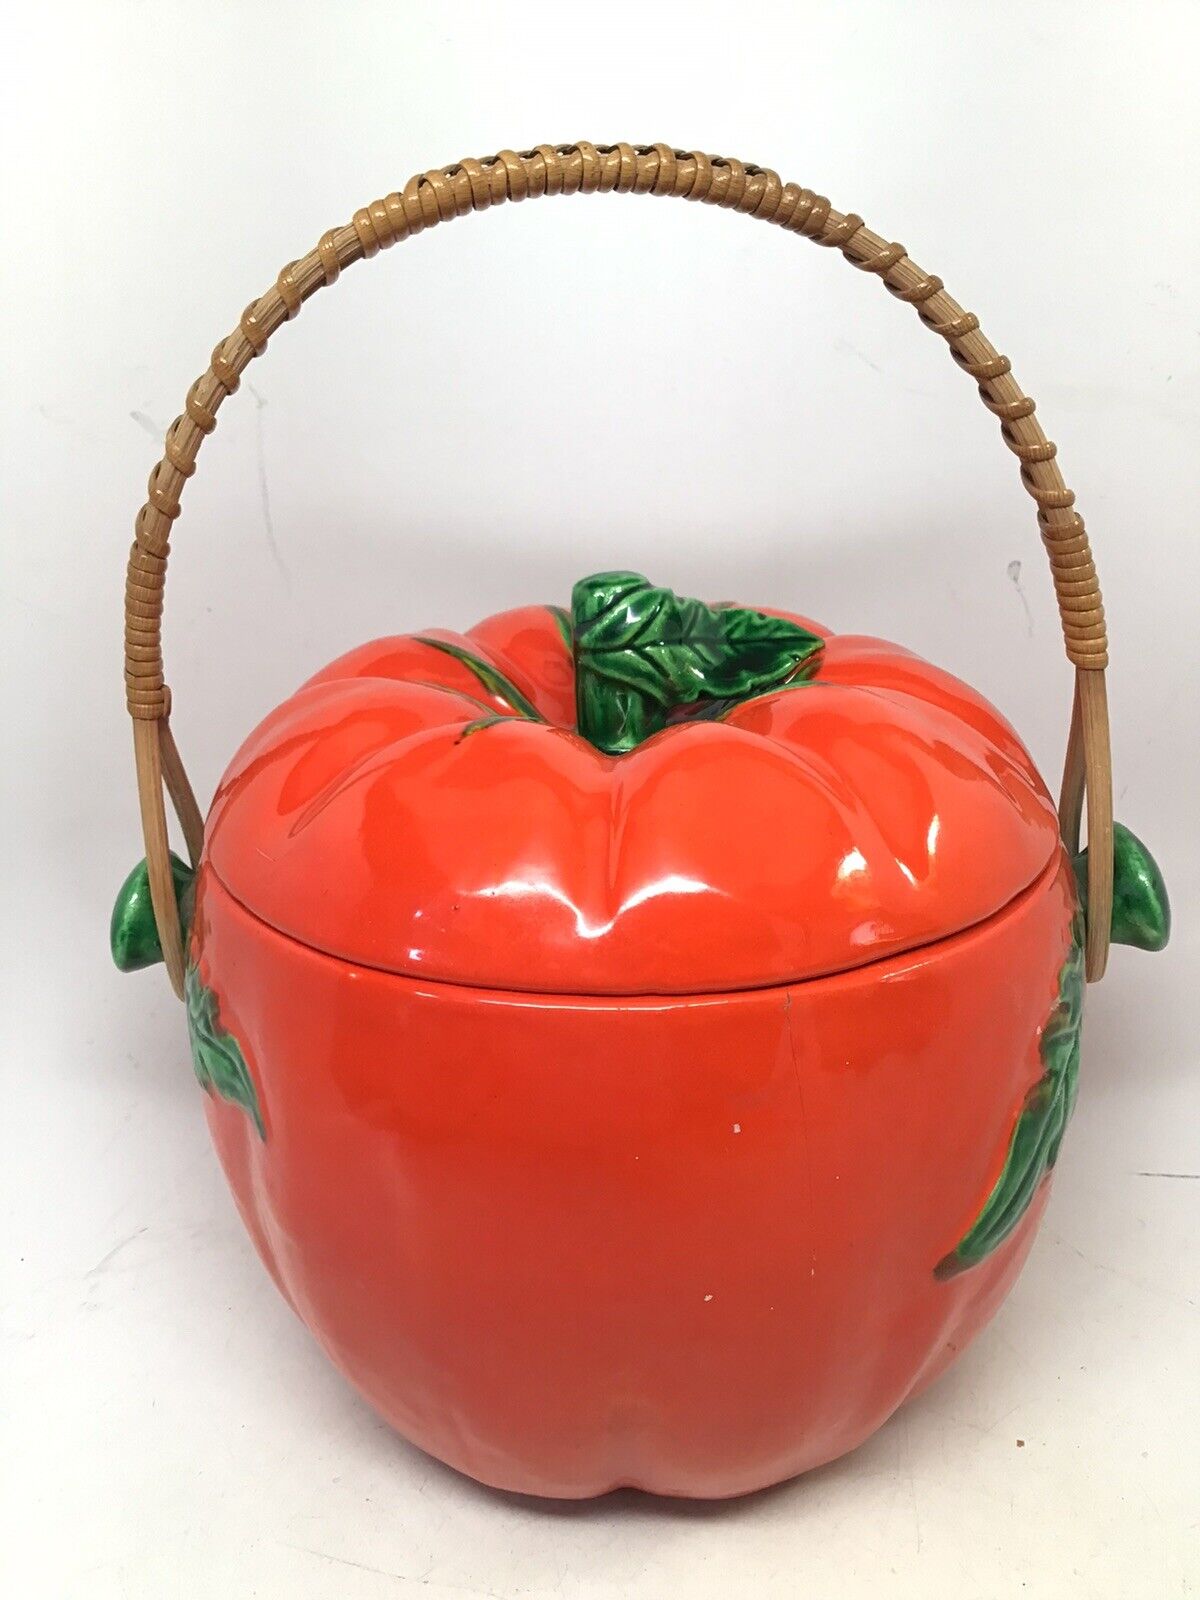 Vintage Ceramic Tomato Cookie Jar Ice Bucket Treat Jar Bamboo Handle 1940s(6)